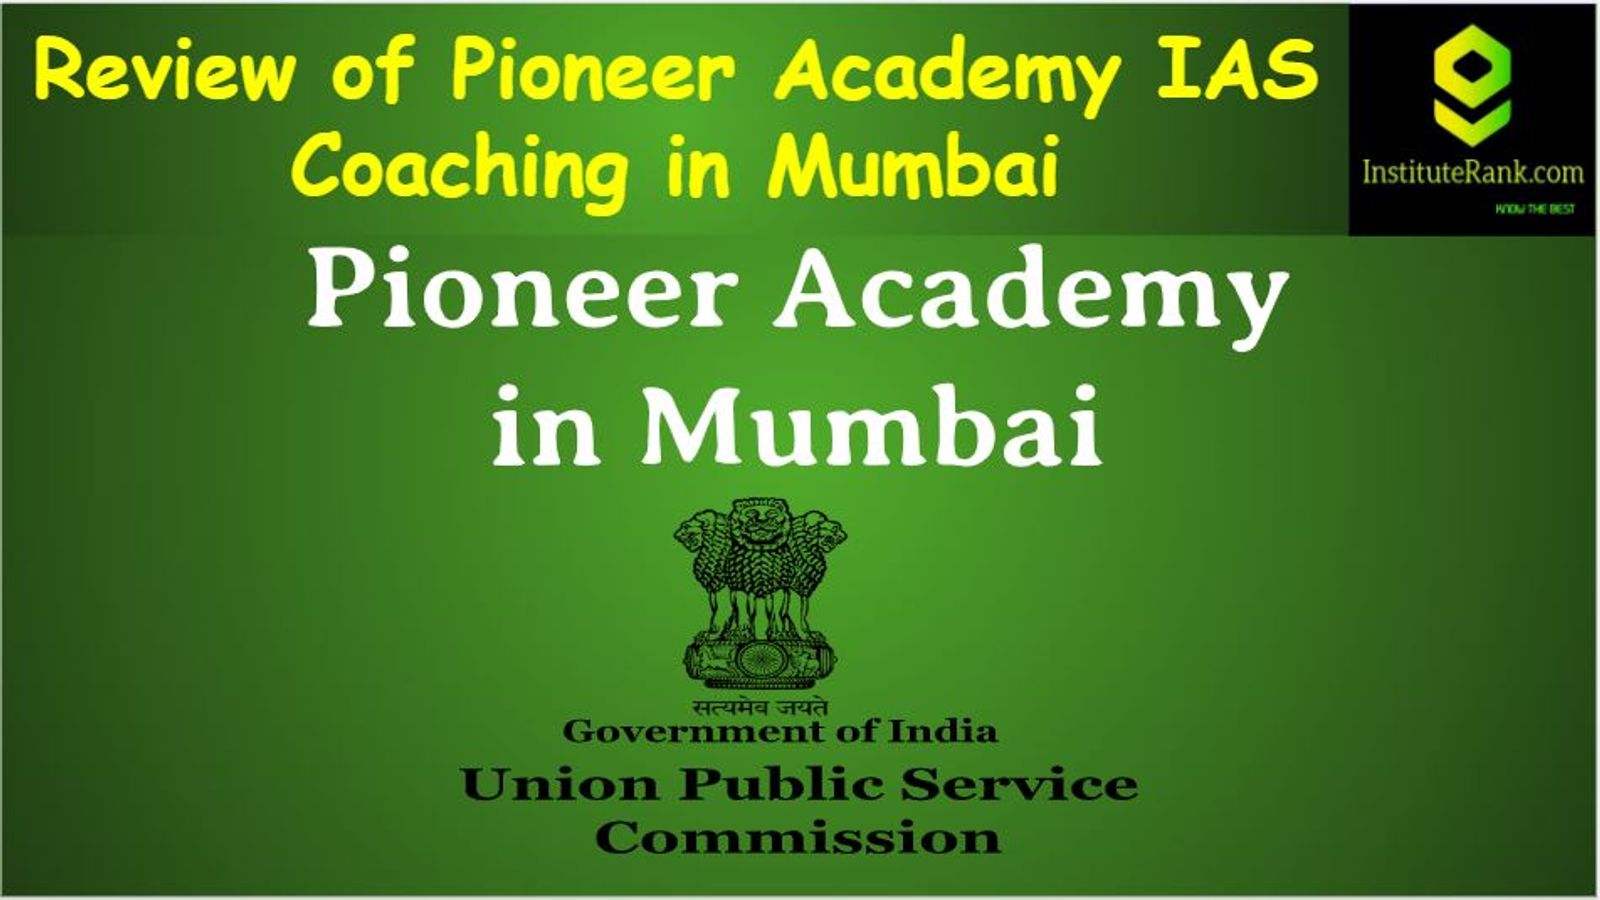 IAS Coaching in Mumbai Reviews